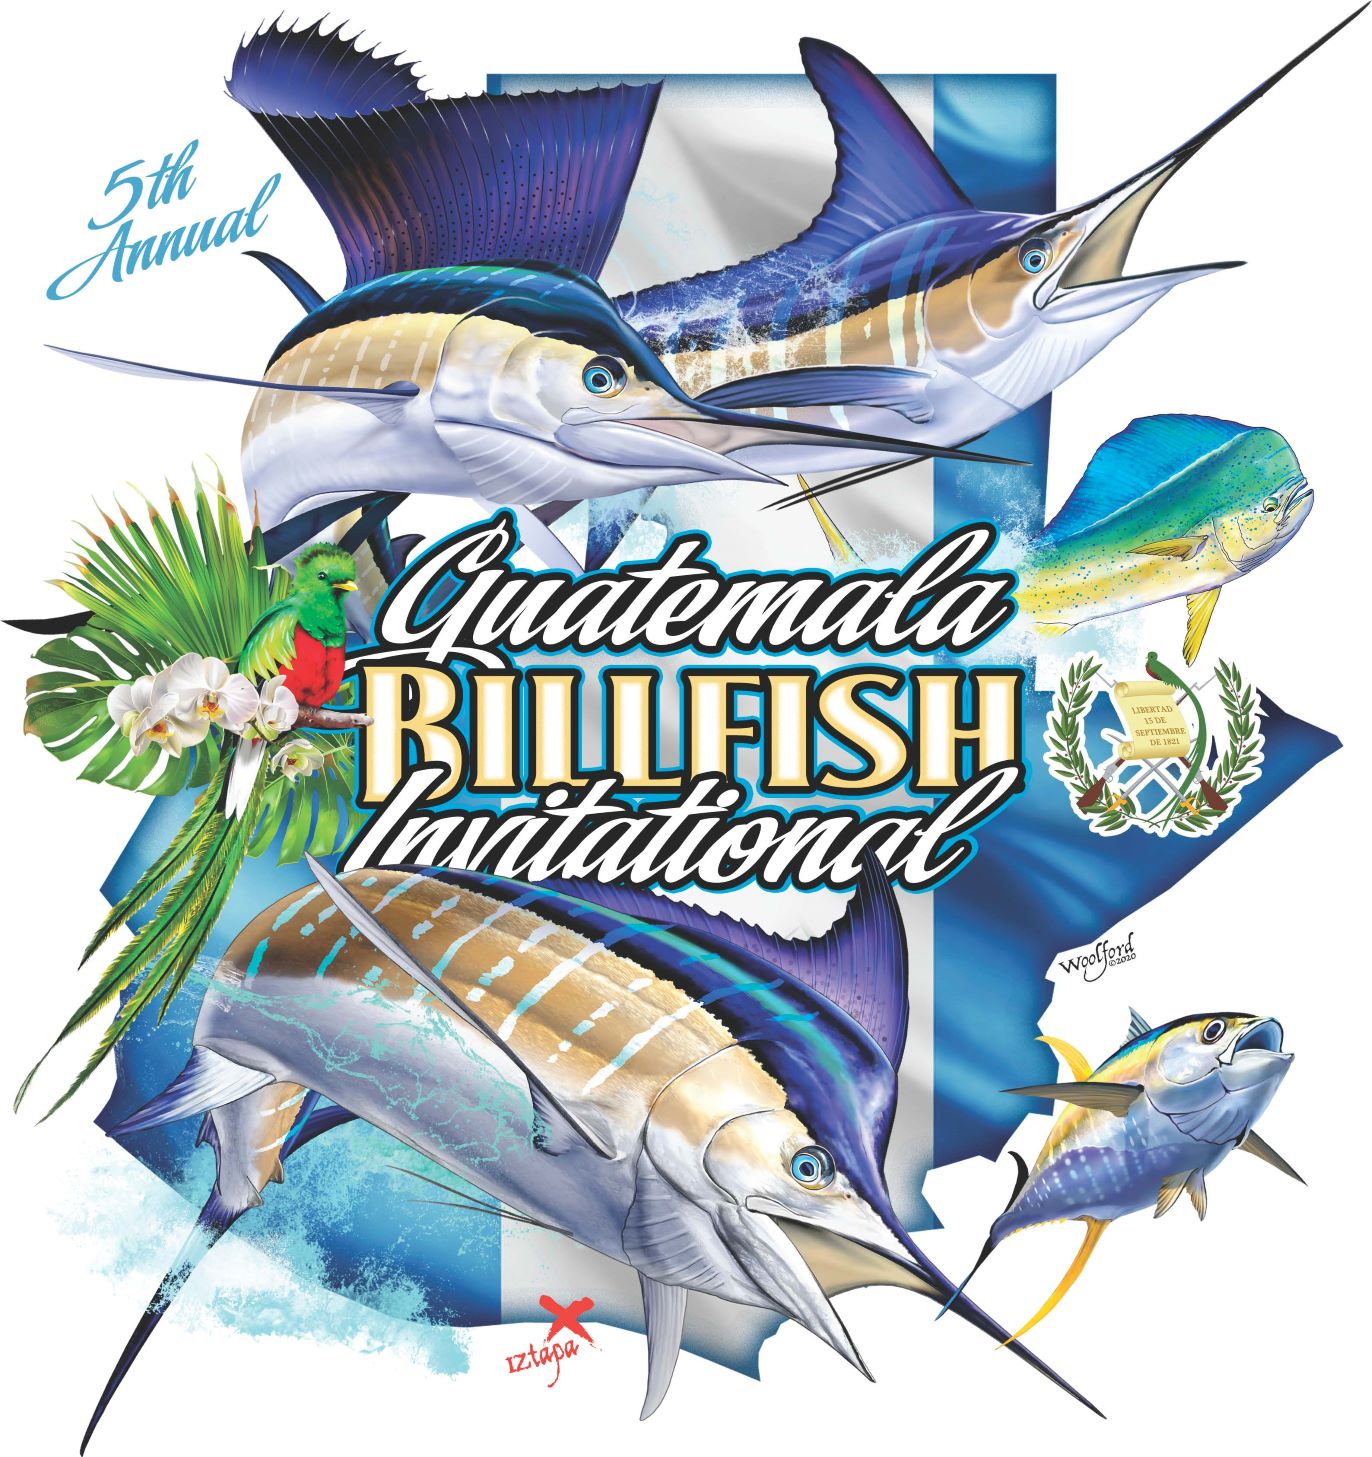 Best Billfish Destination Archives - Page 3 of 6 - Pacificfins Resort